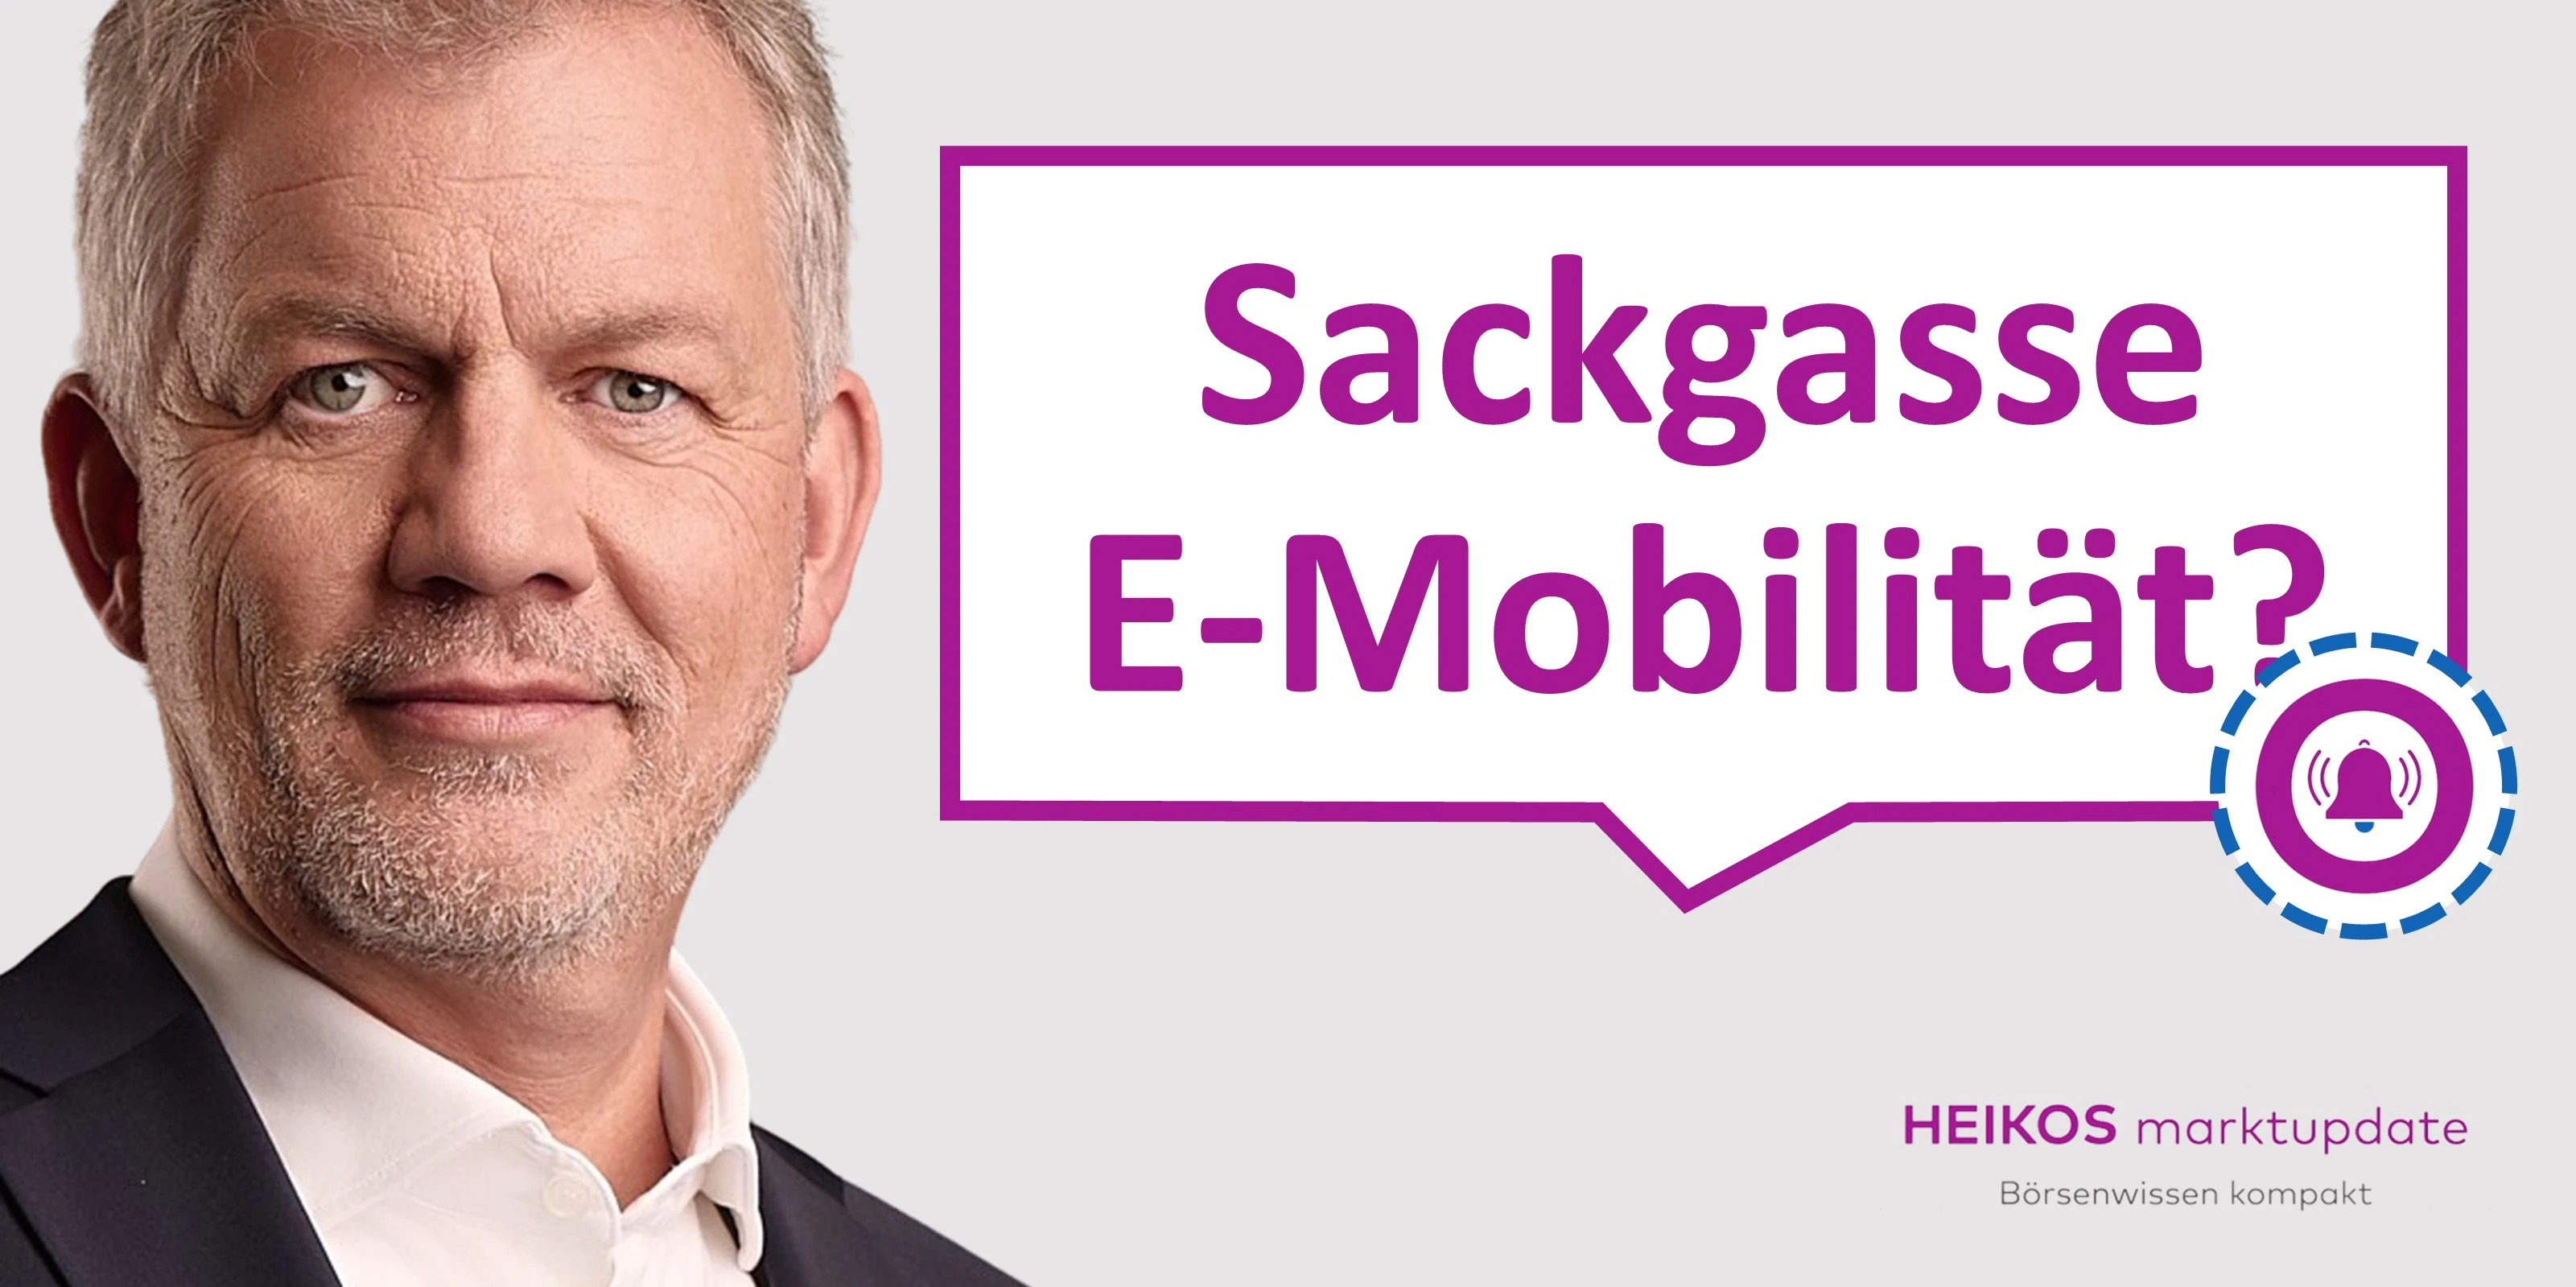 E-Mobilität löst nicht alle Zukunftsprobleme - Heiko Böhmer im aktuellen Marktupdate